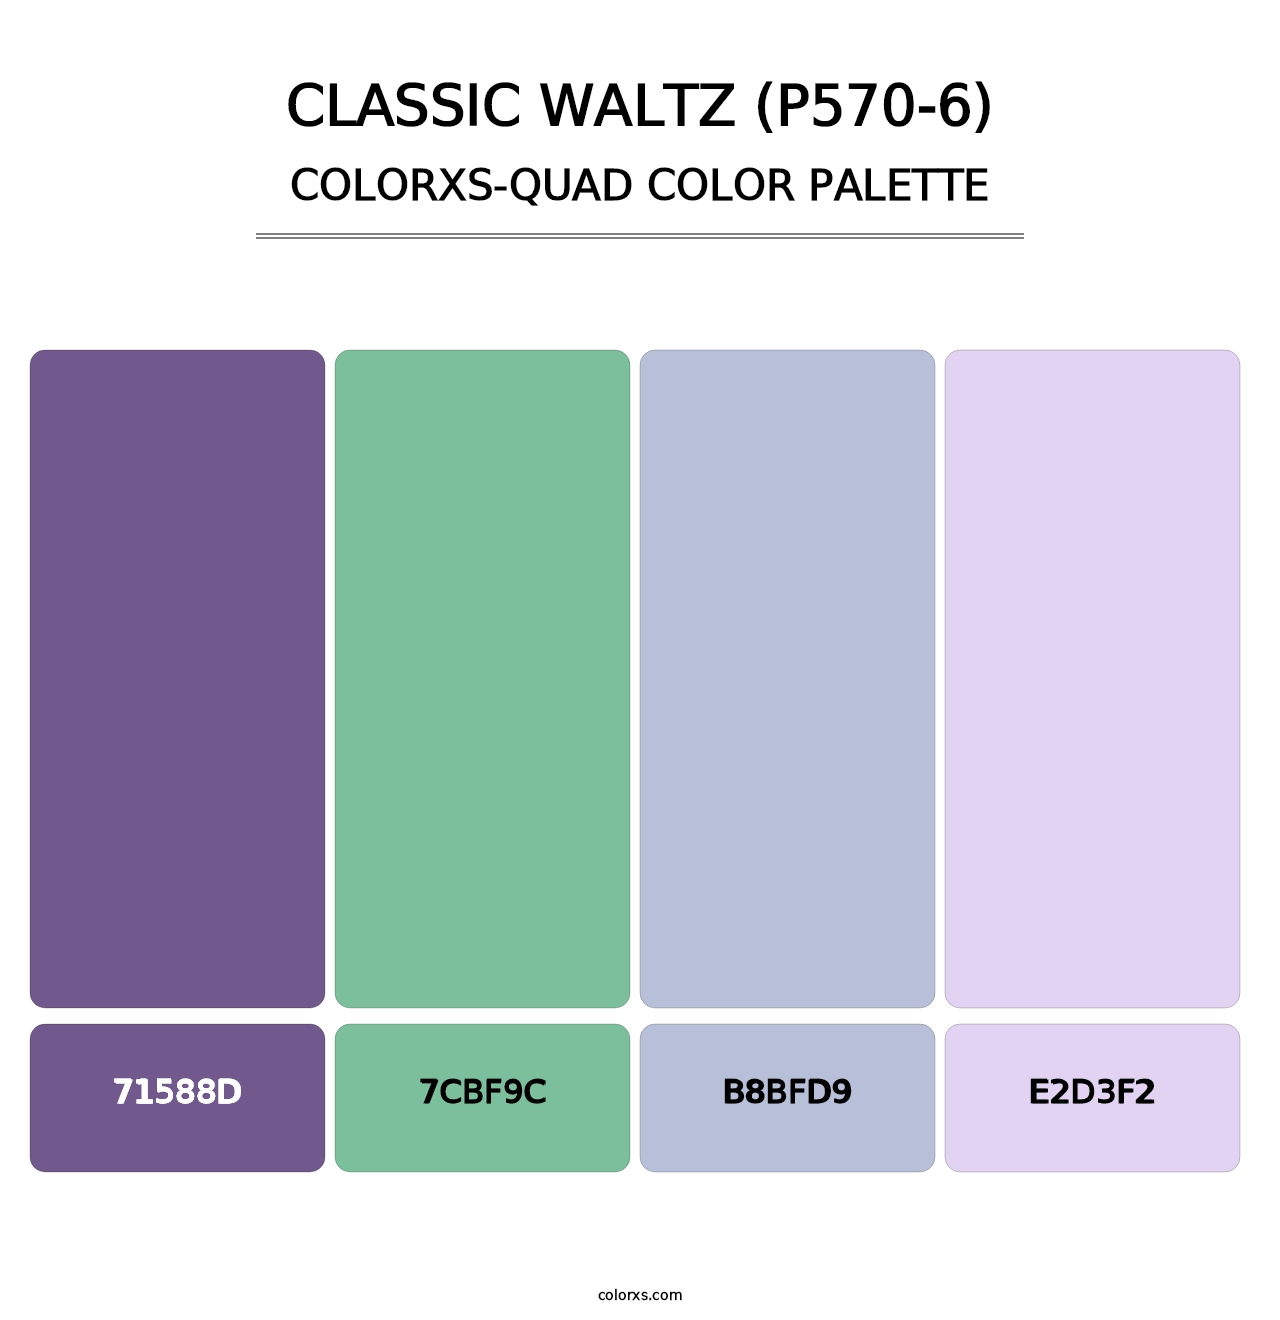 Classic Waltz (P570-6) - Colorxs Quad Palette